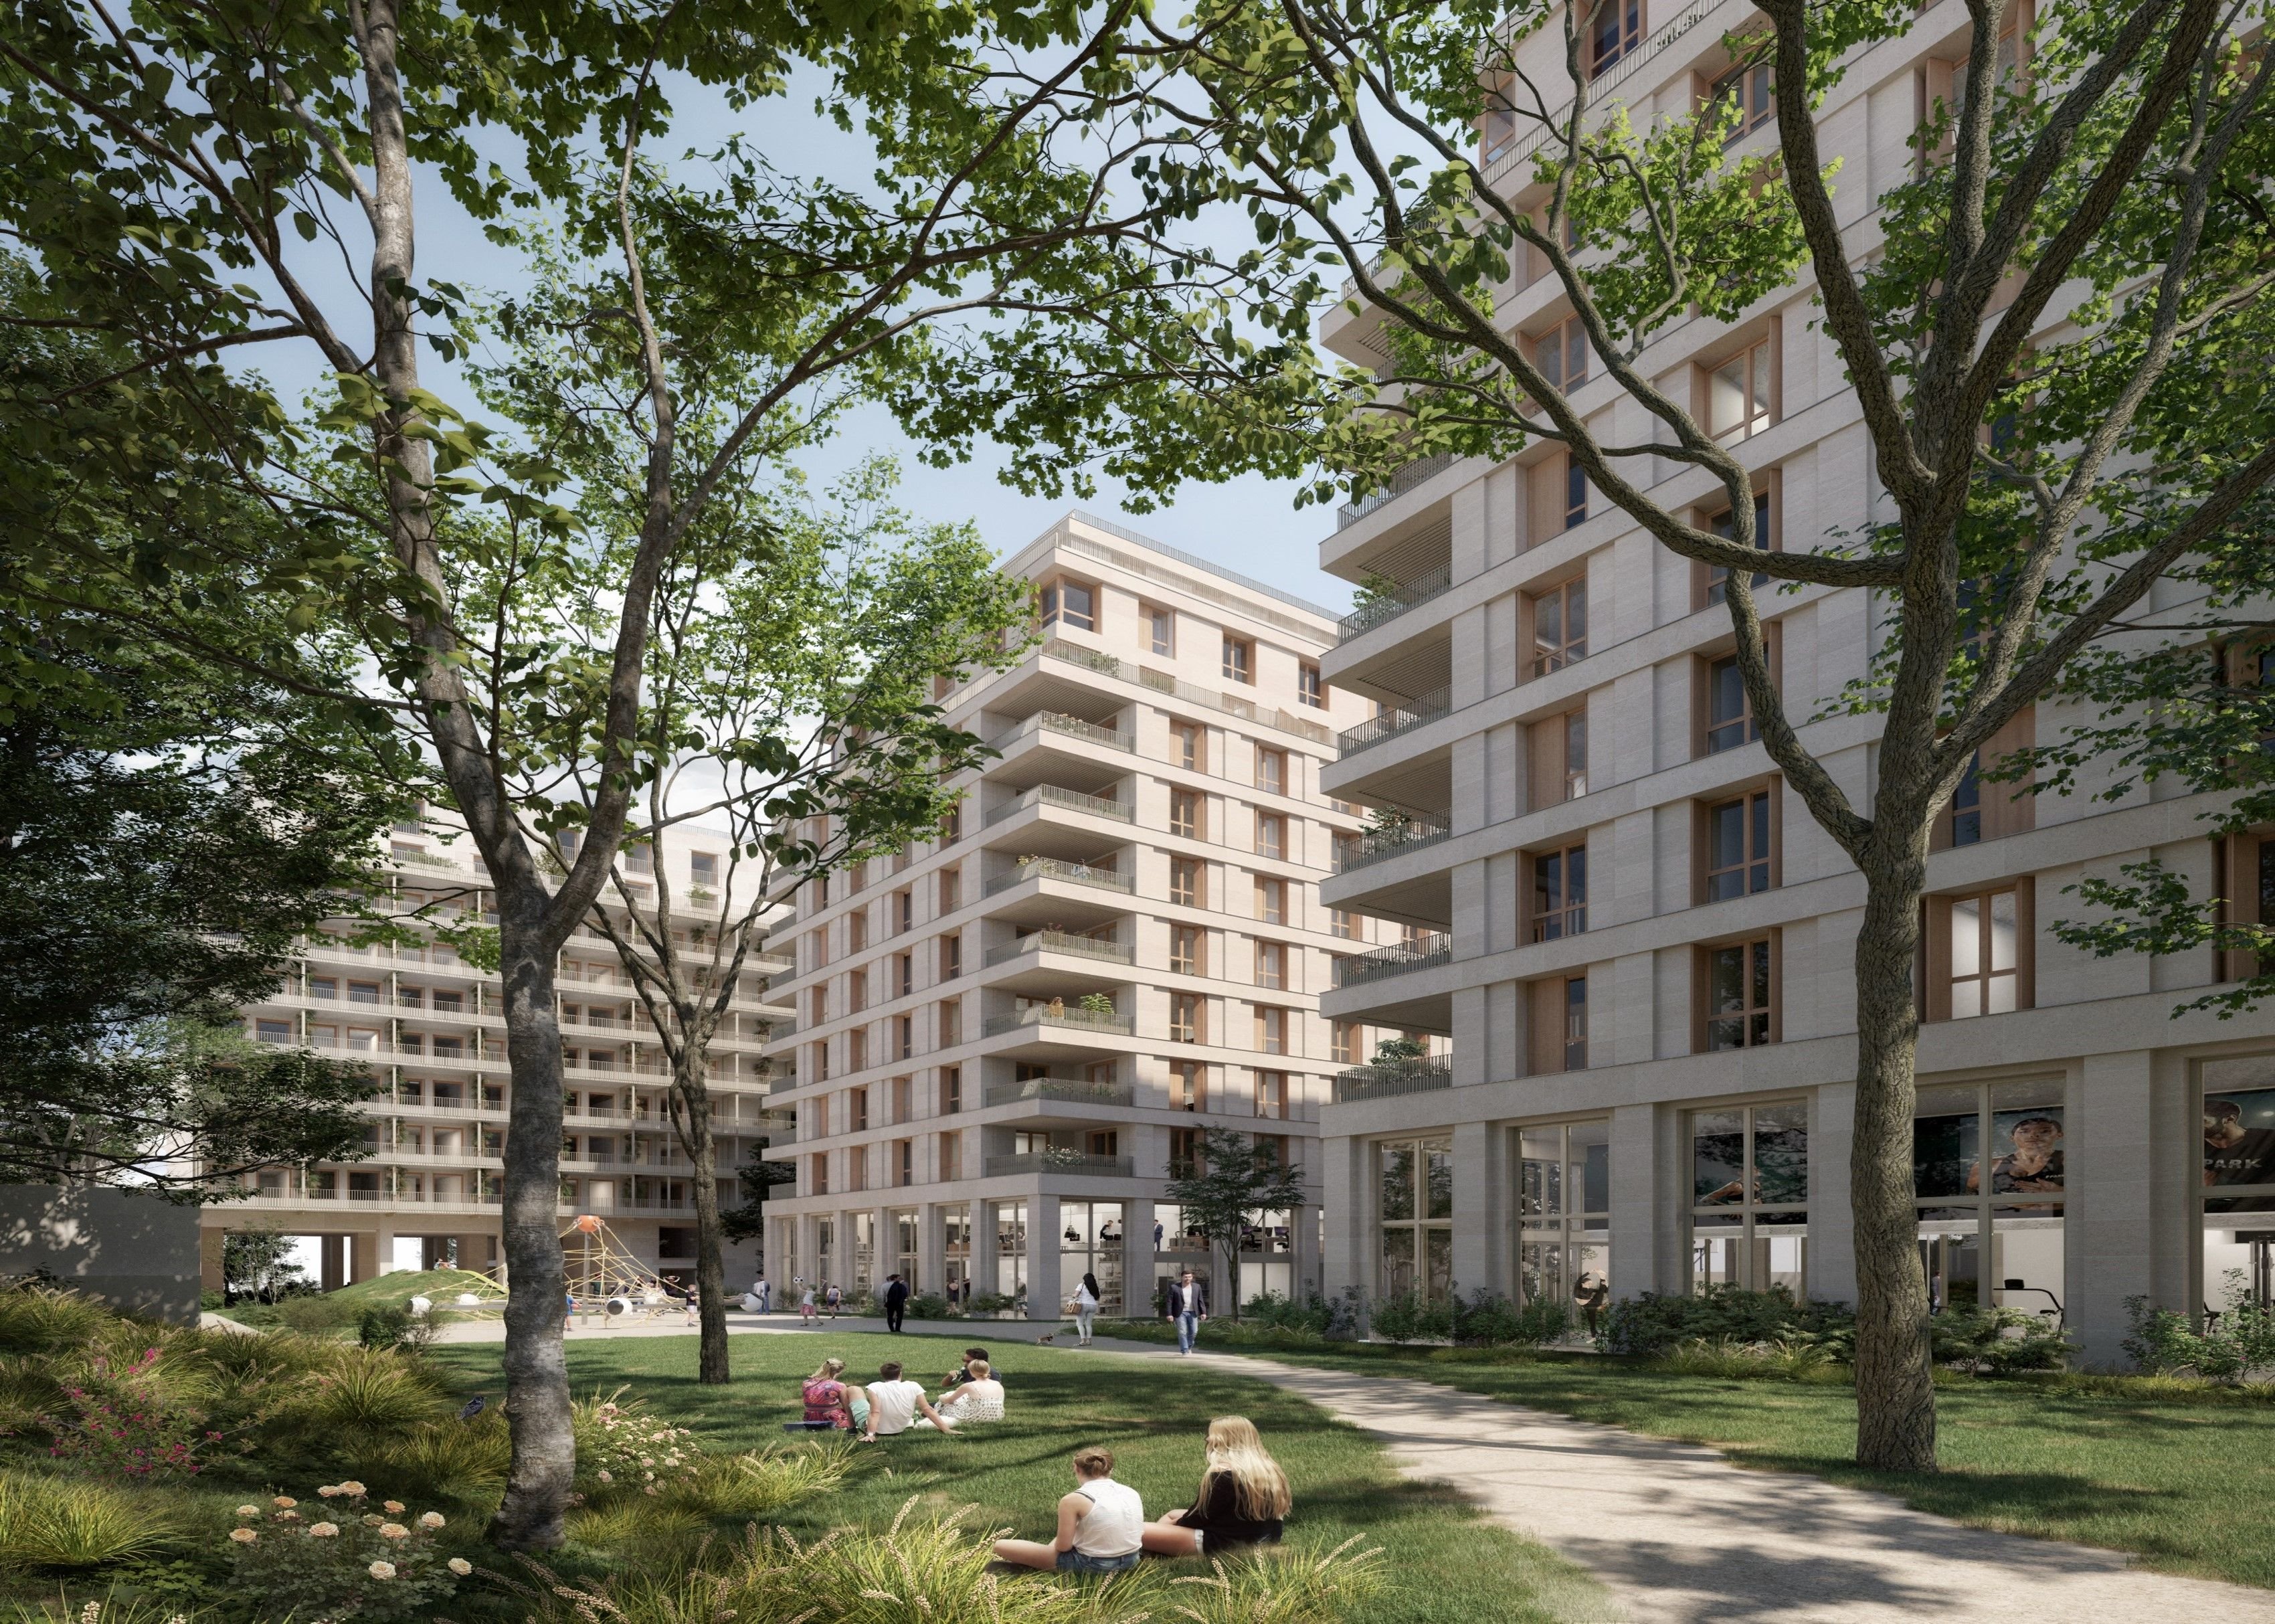 À Courbevoie (Hauts-de-Seine), les bureaux de l'ancien siège de Gefco accueilleront près de 200 logements, dont une centaine de logements sociaux. Hardel le Bihan Architectes & Al